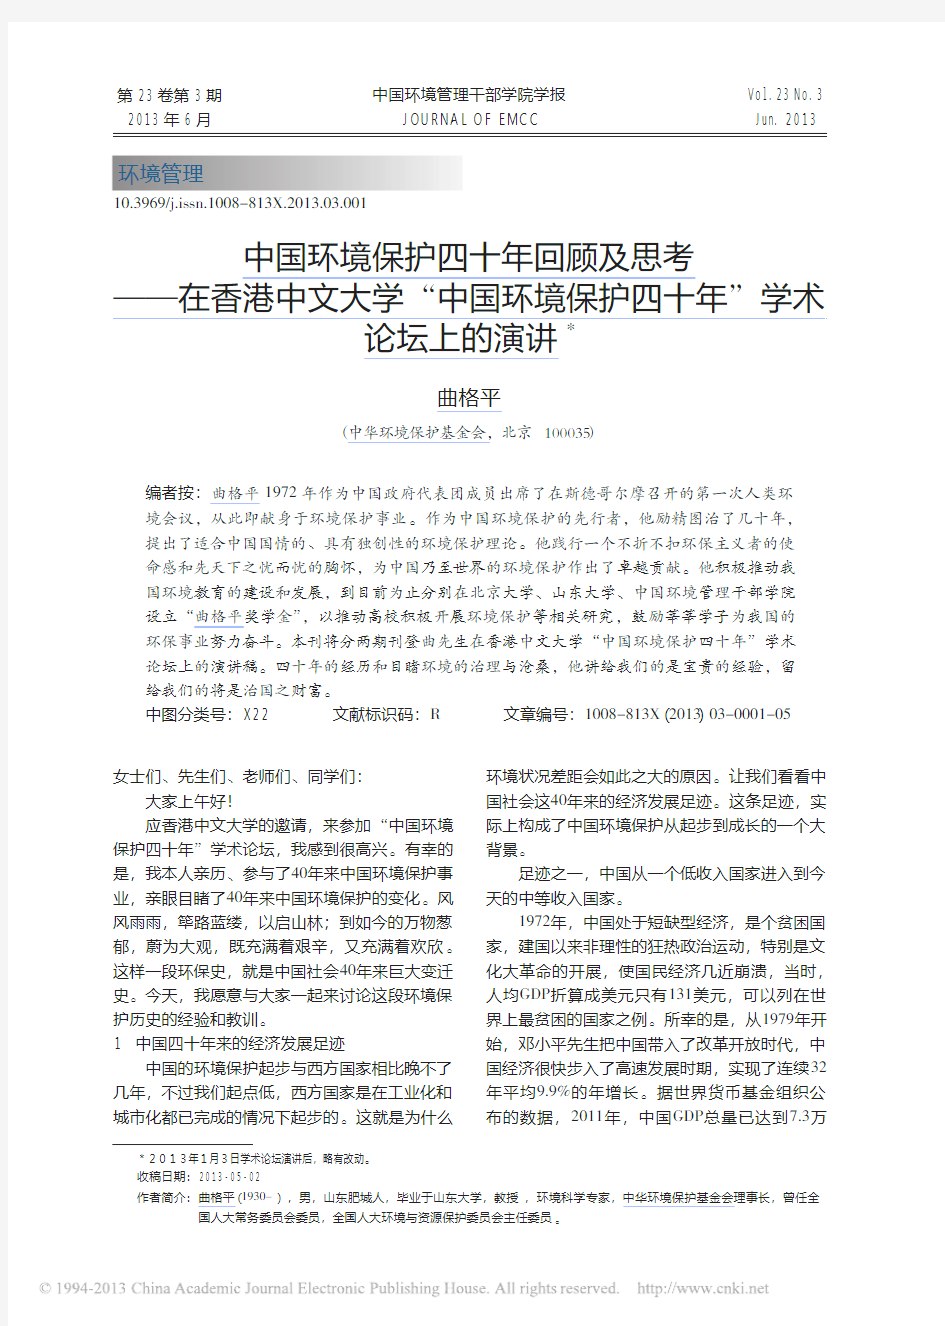 中国环境保护四十年回顾及思考_在_省略_环境保护四十年_学术论坛上的演讲_曲格平 (1)